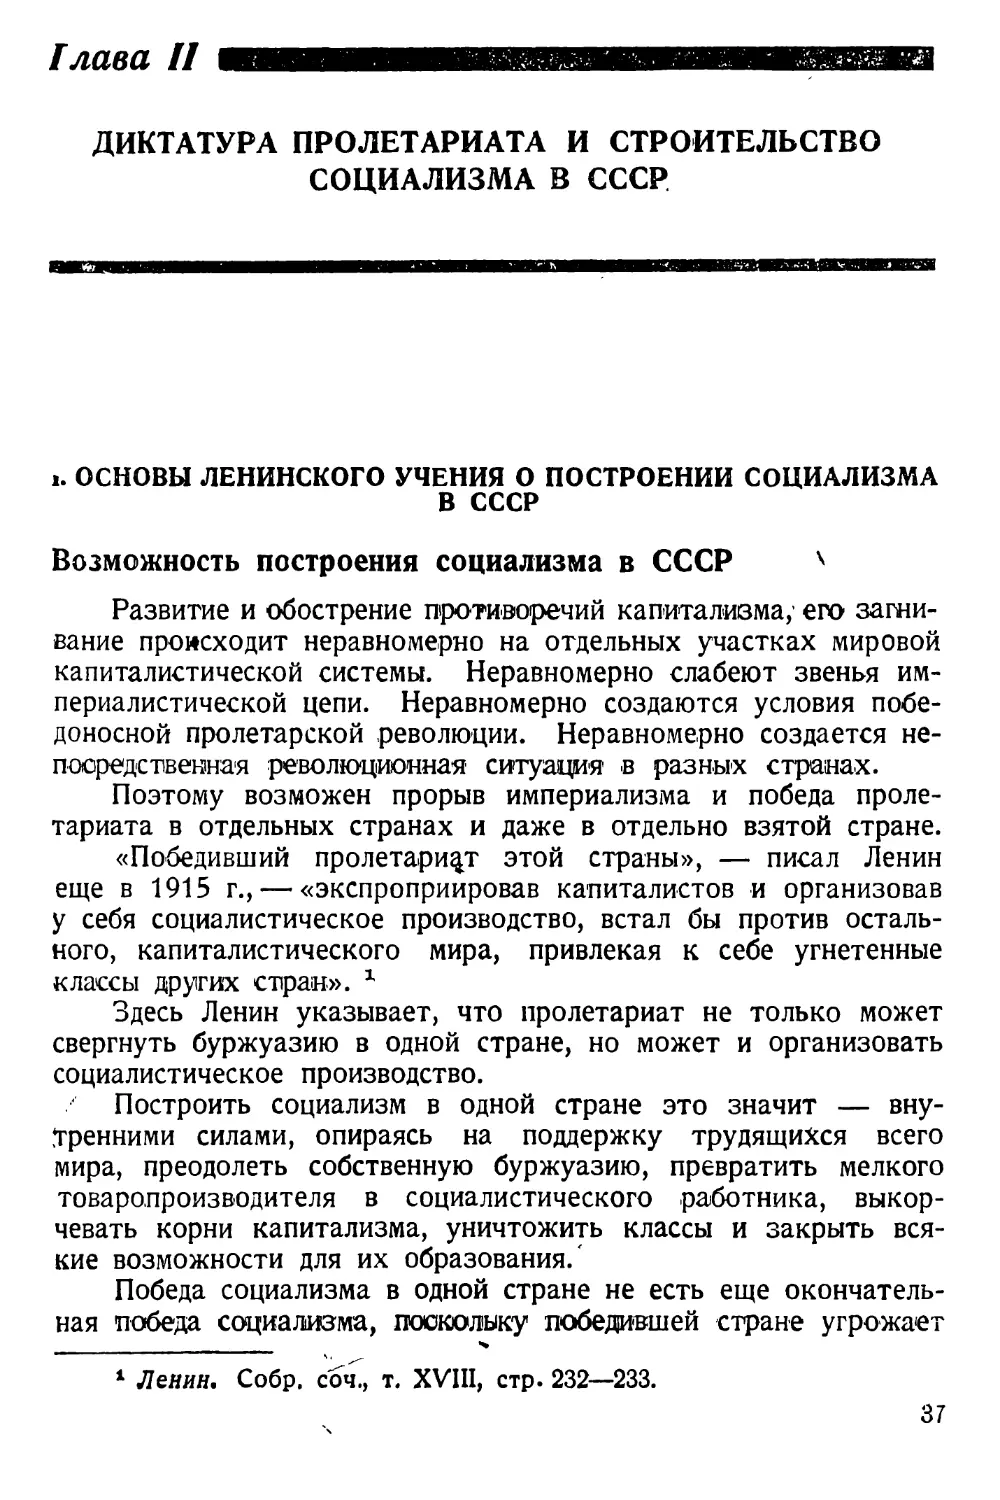 Глава II. Диктатура пролетариата и строительство социализма в СССР